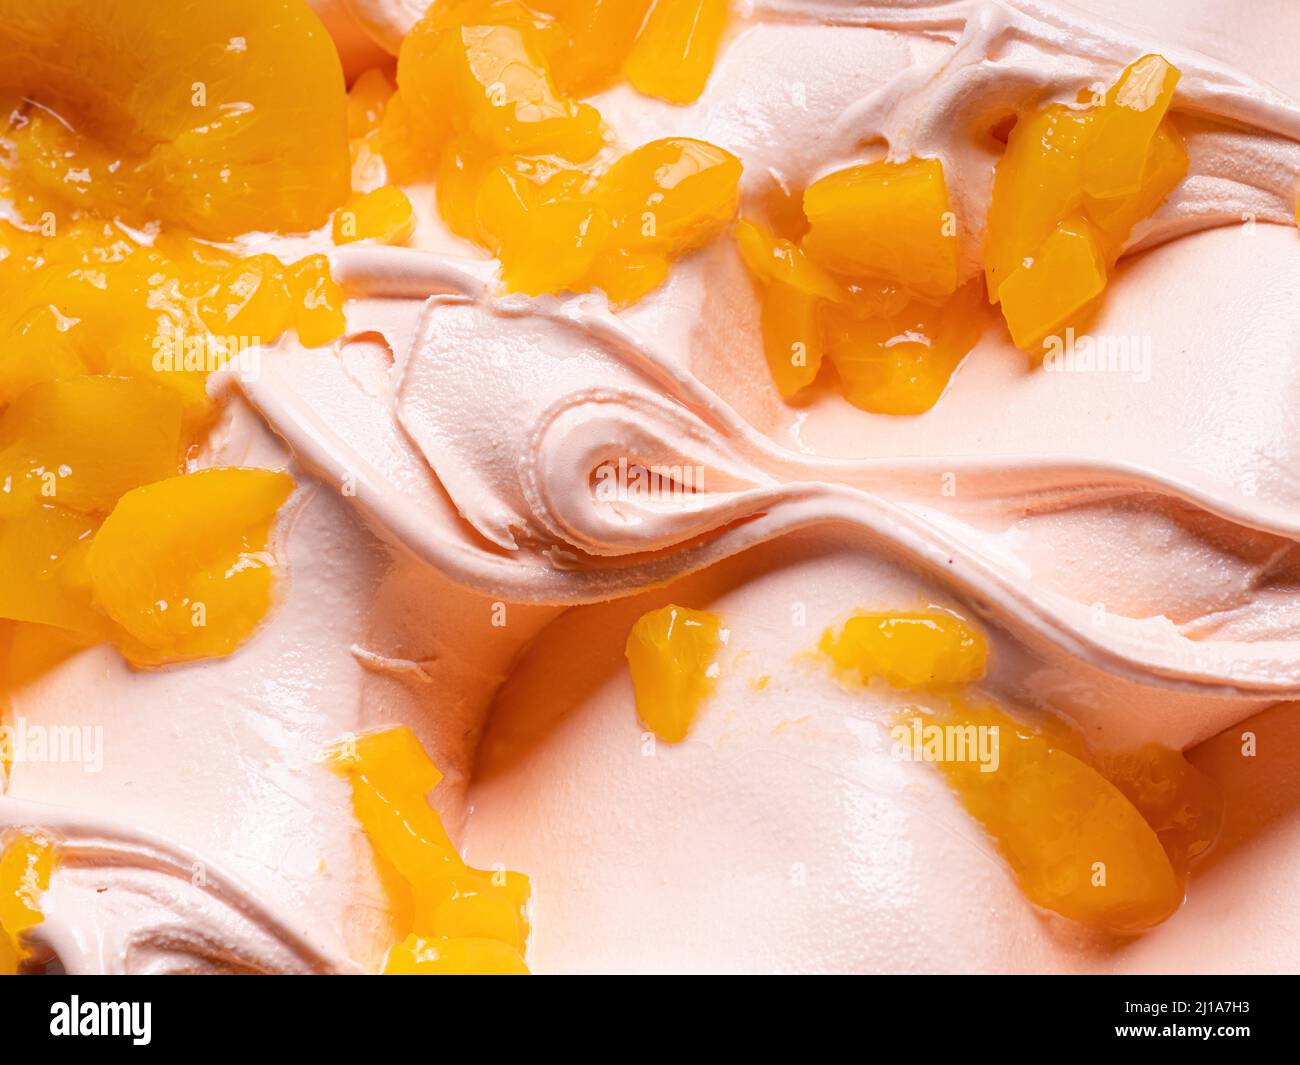 Gelato Frozen Peach Flavour - dettaglio telaio completo. Primo piano di una texture superficiale beige di gelato coperto con pezzi di frutta di colore arancio. Foto Stock